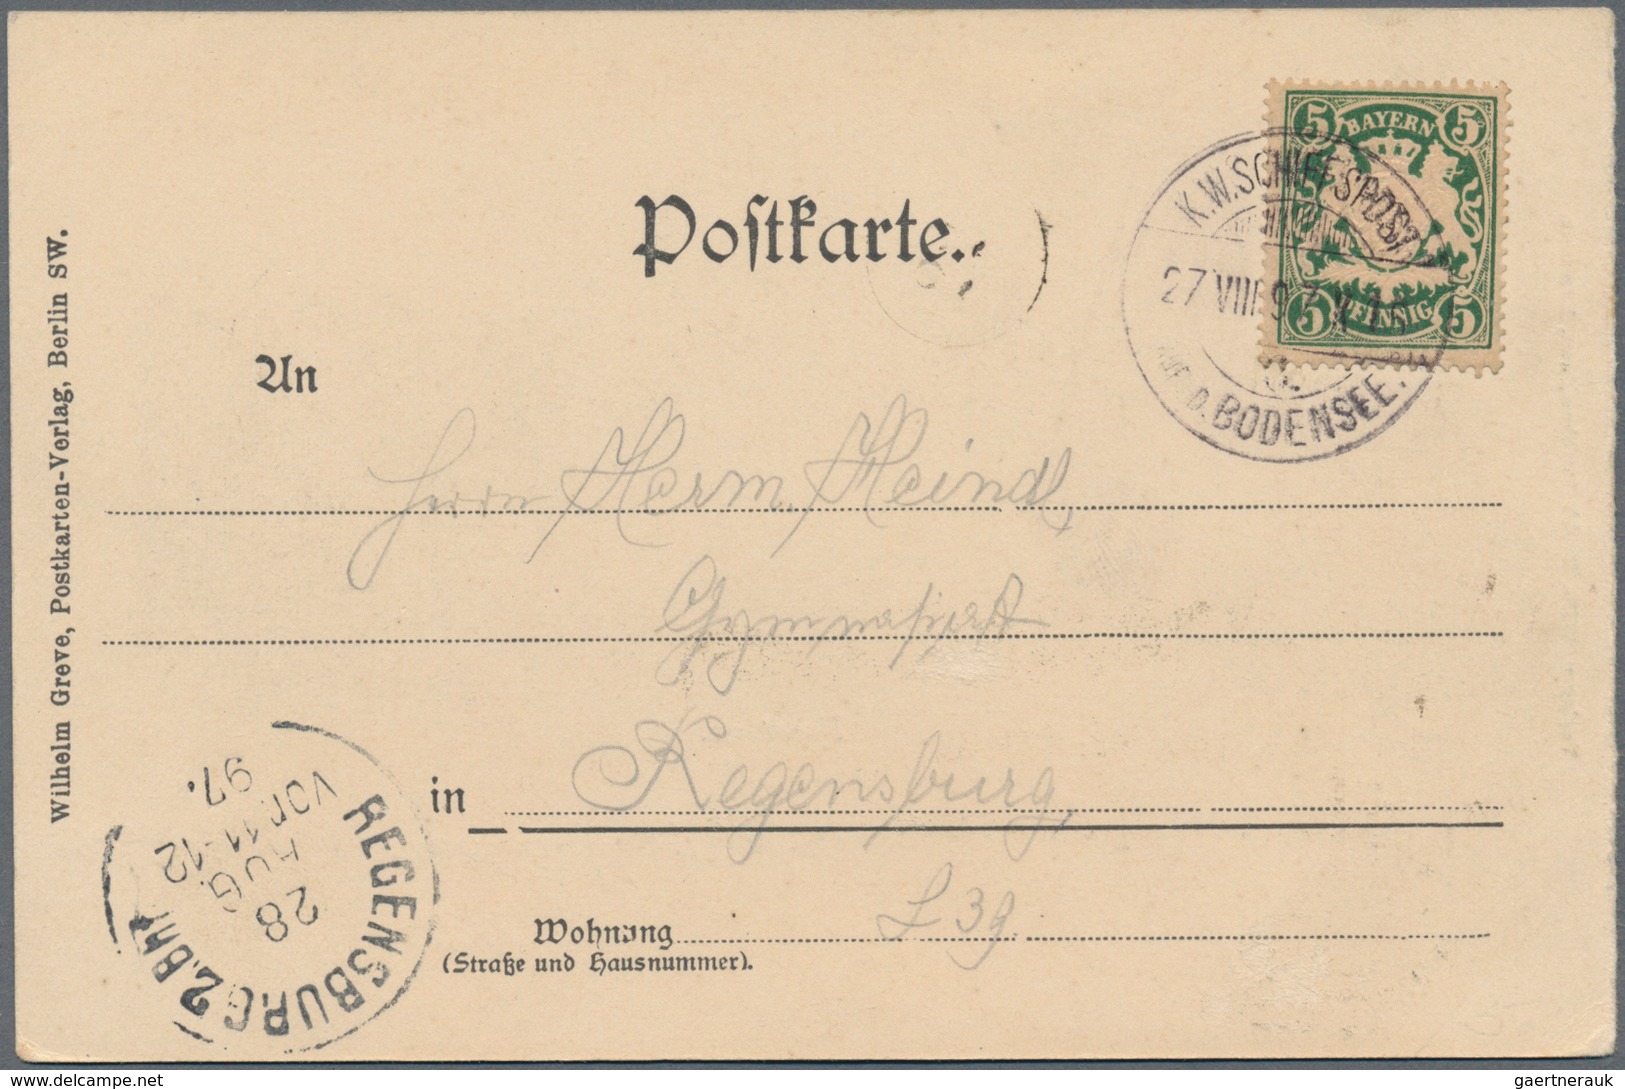 Württemberg - Marken und Briefe: 1875-1923, tolle Sammlung von ca. 290 Belegen mit interessanten Fra